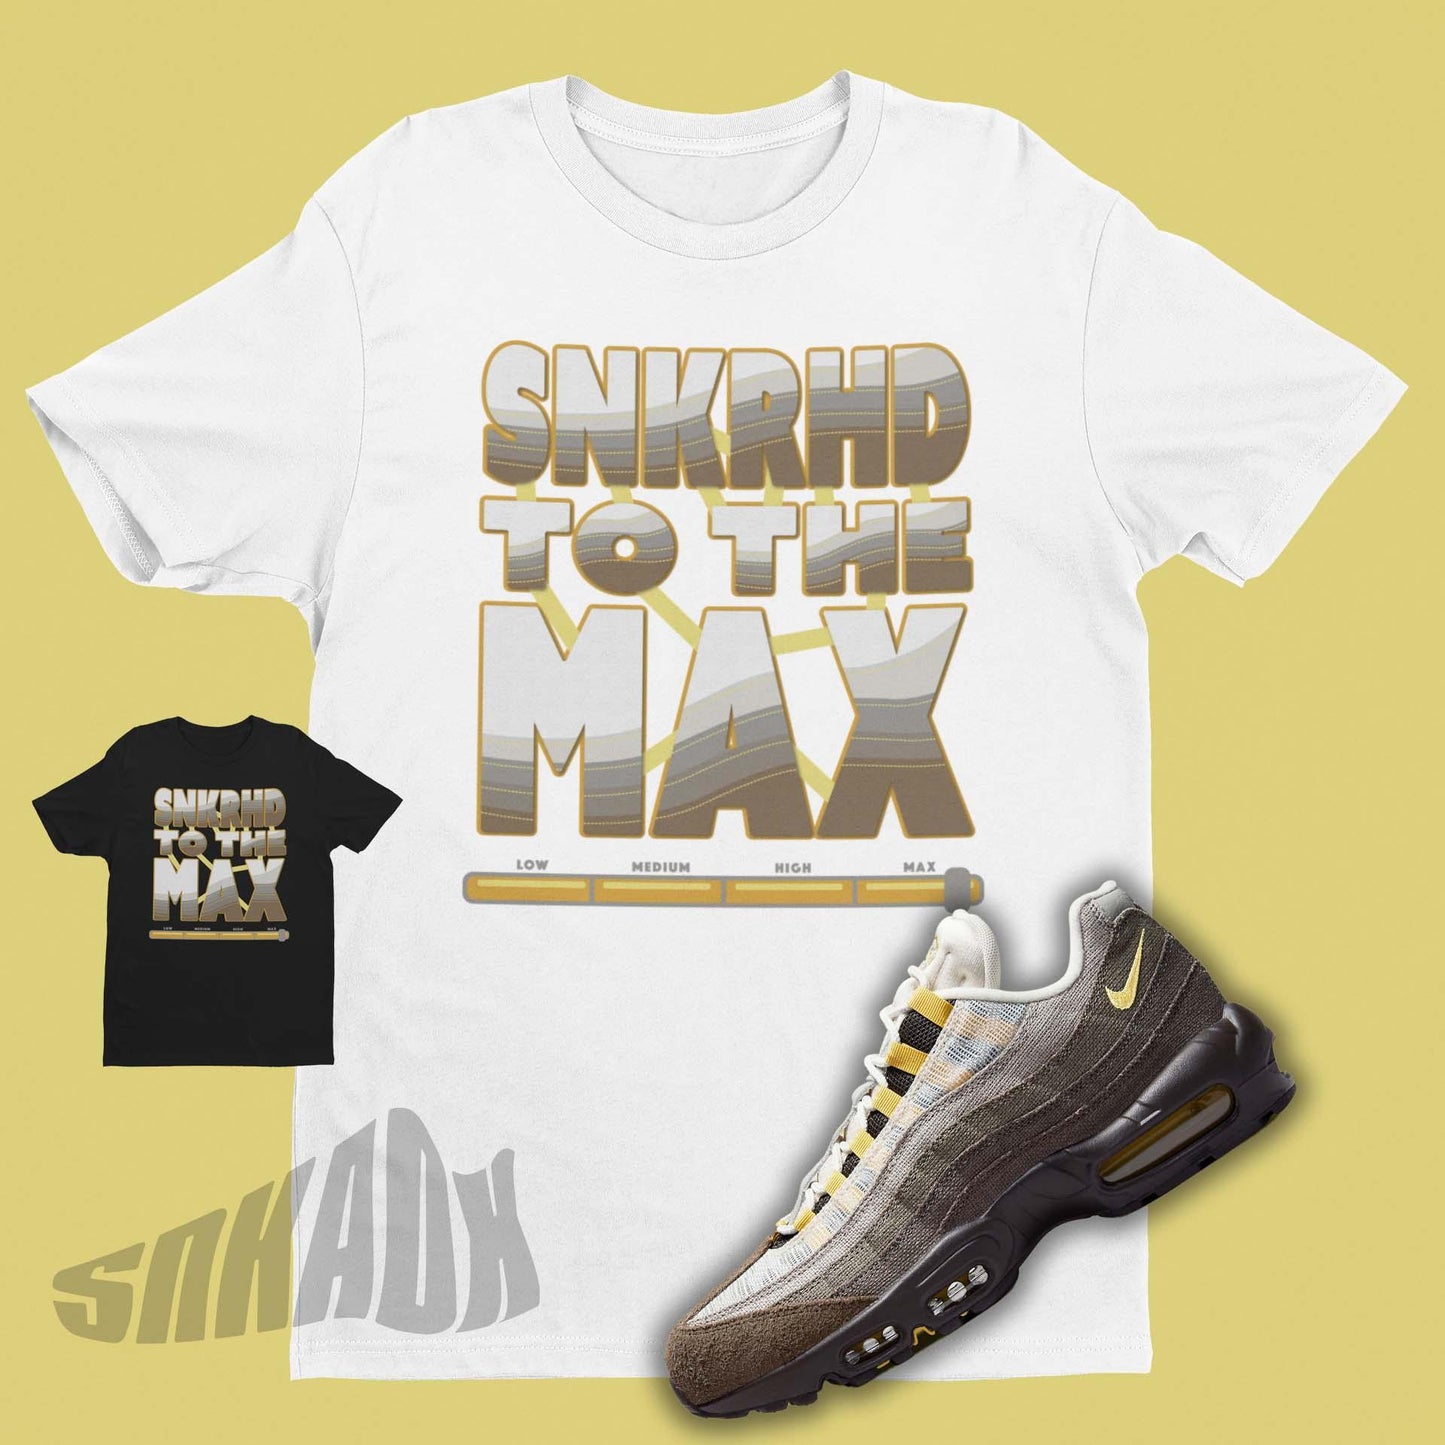 Air Max 95 matching shirt.